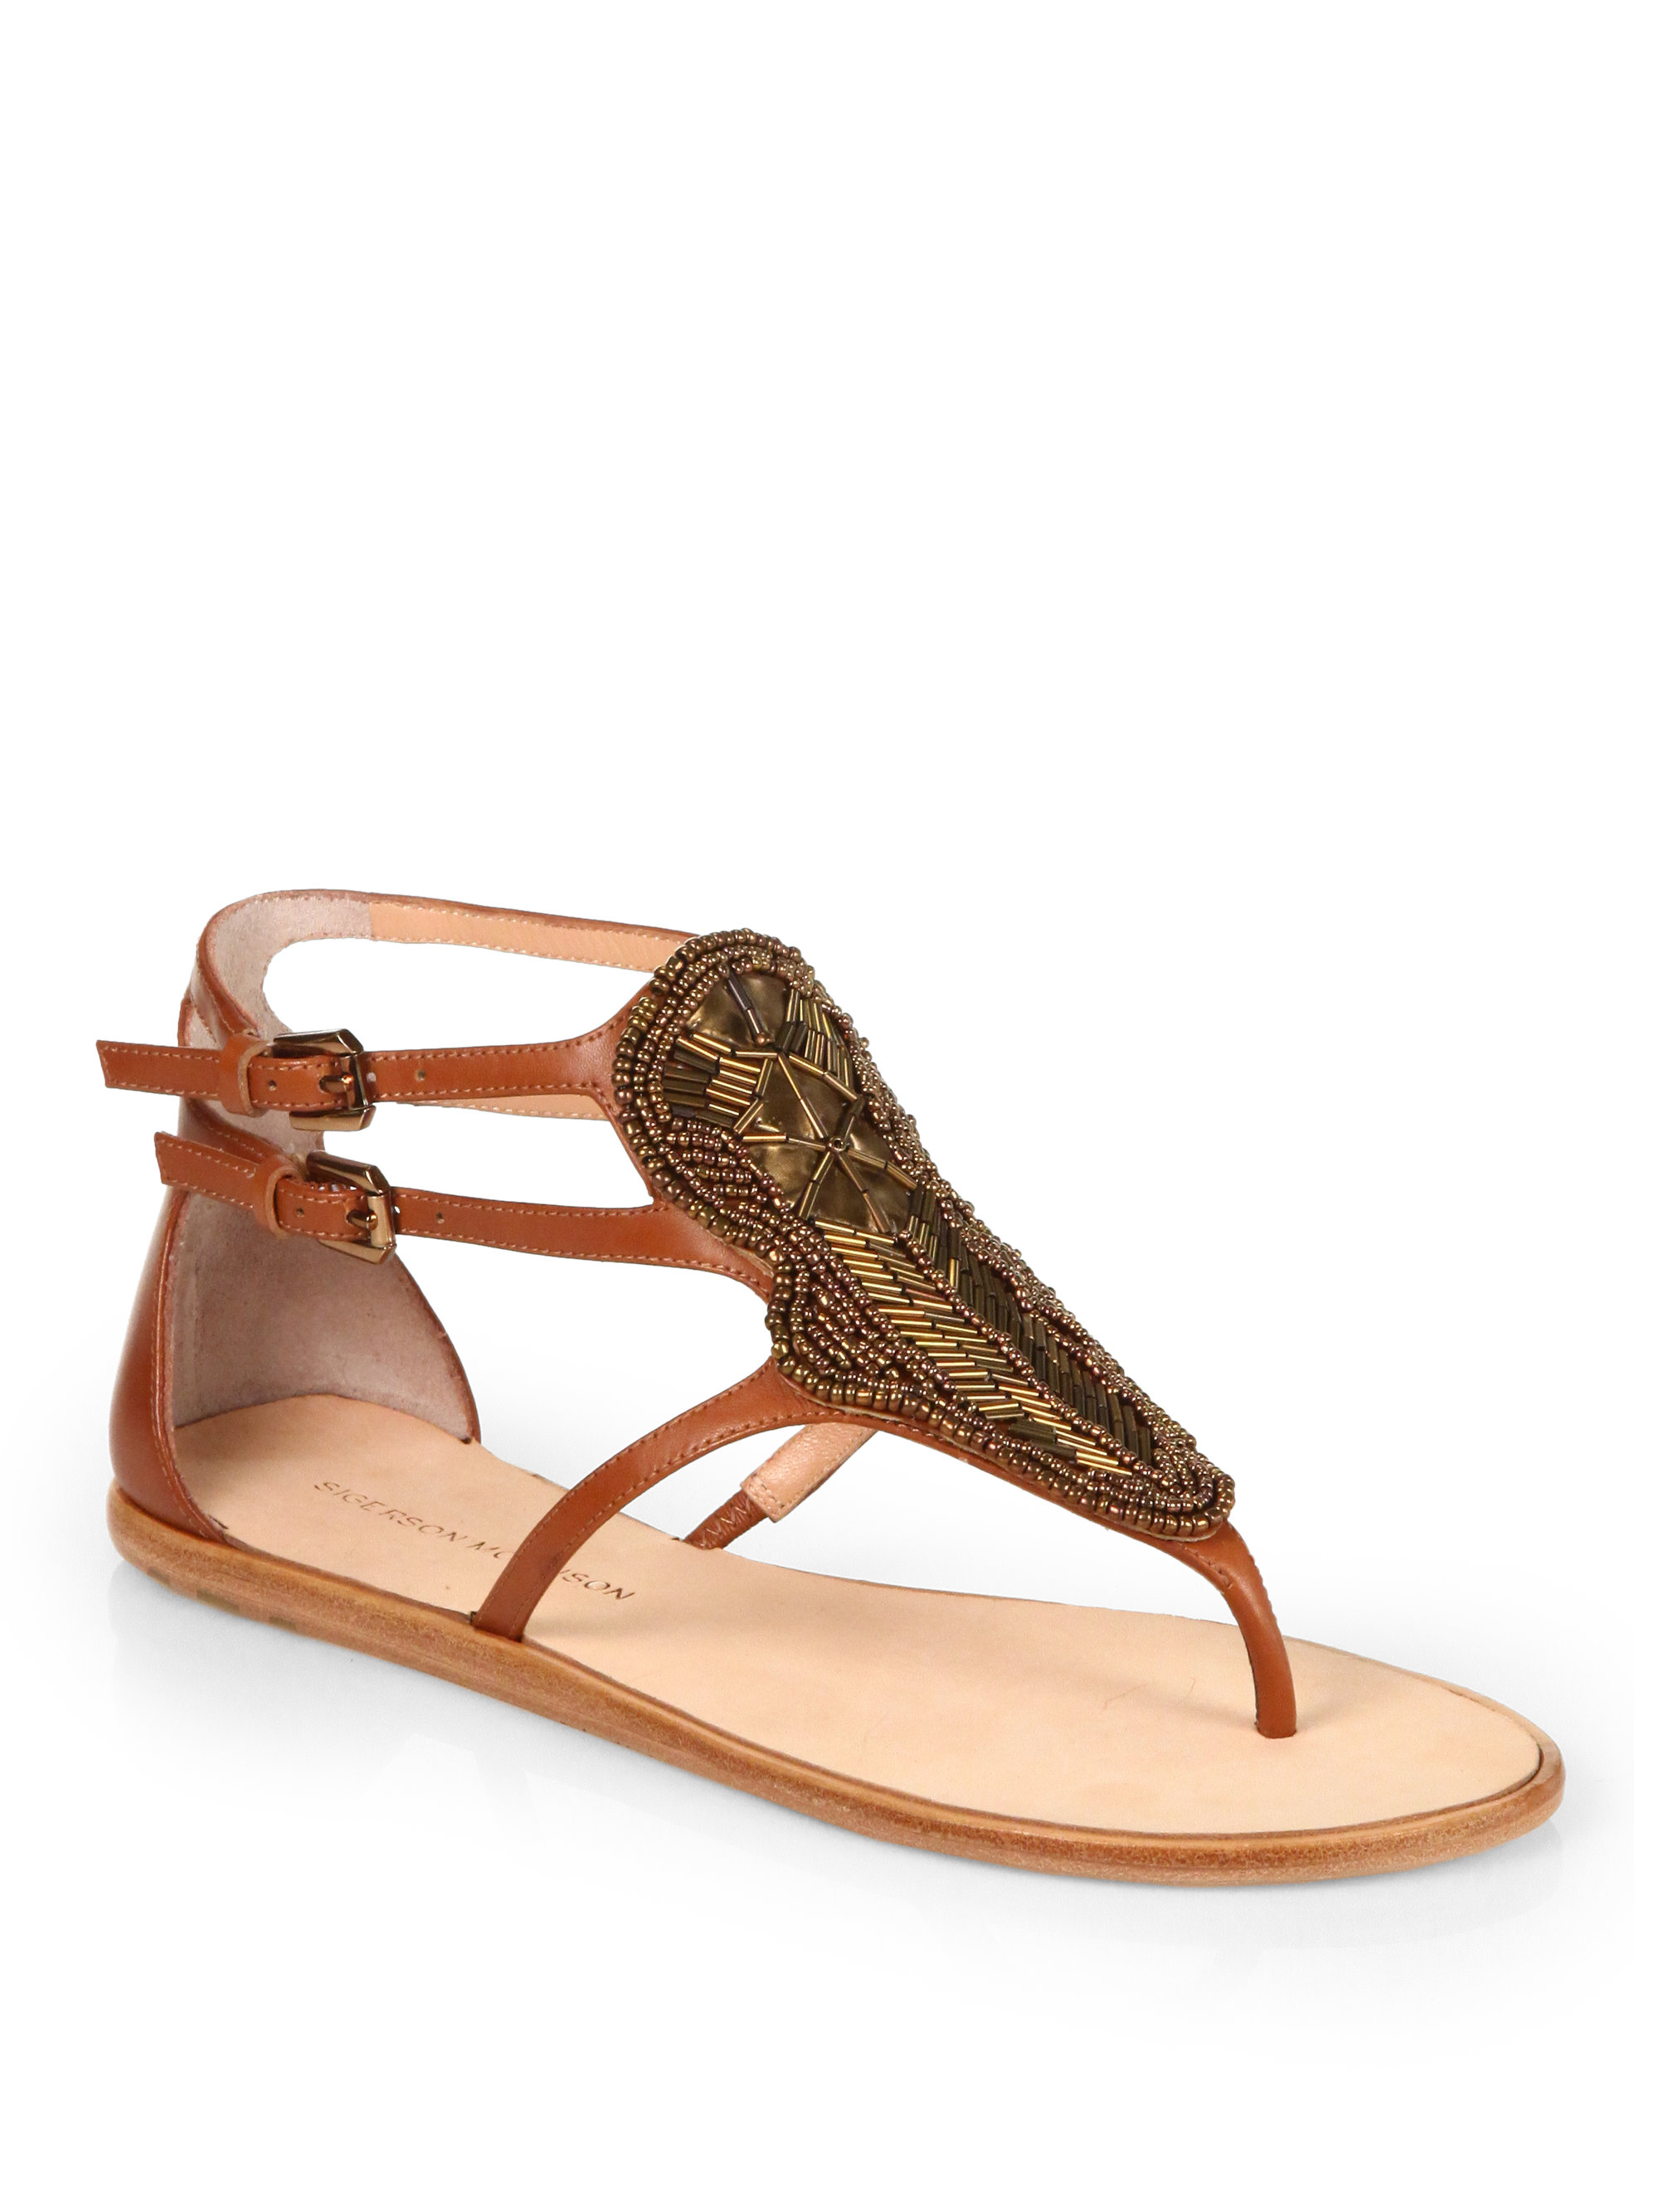 Sigerson Morrison Gitta Embellished Flat Sandals in Brown | Lyst